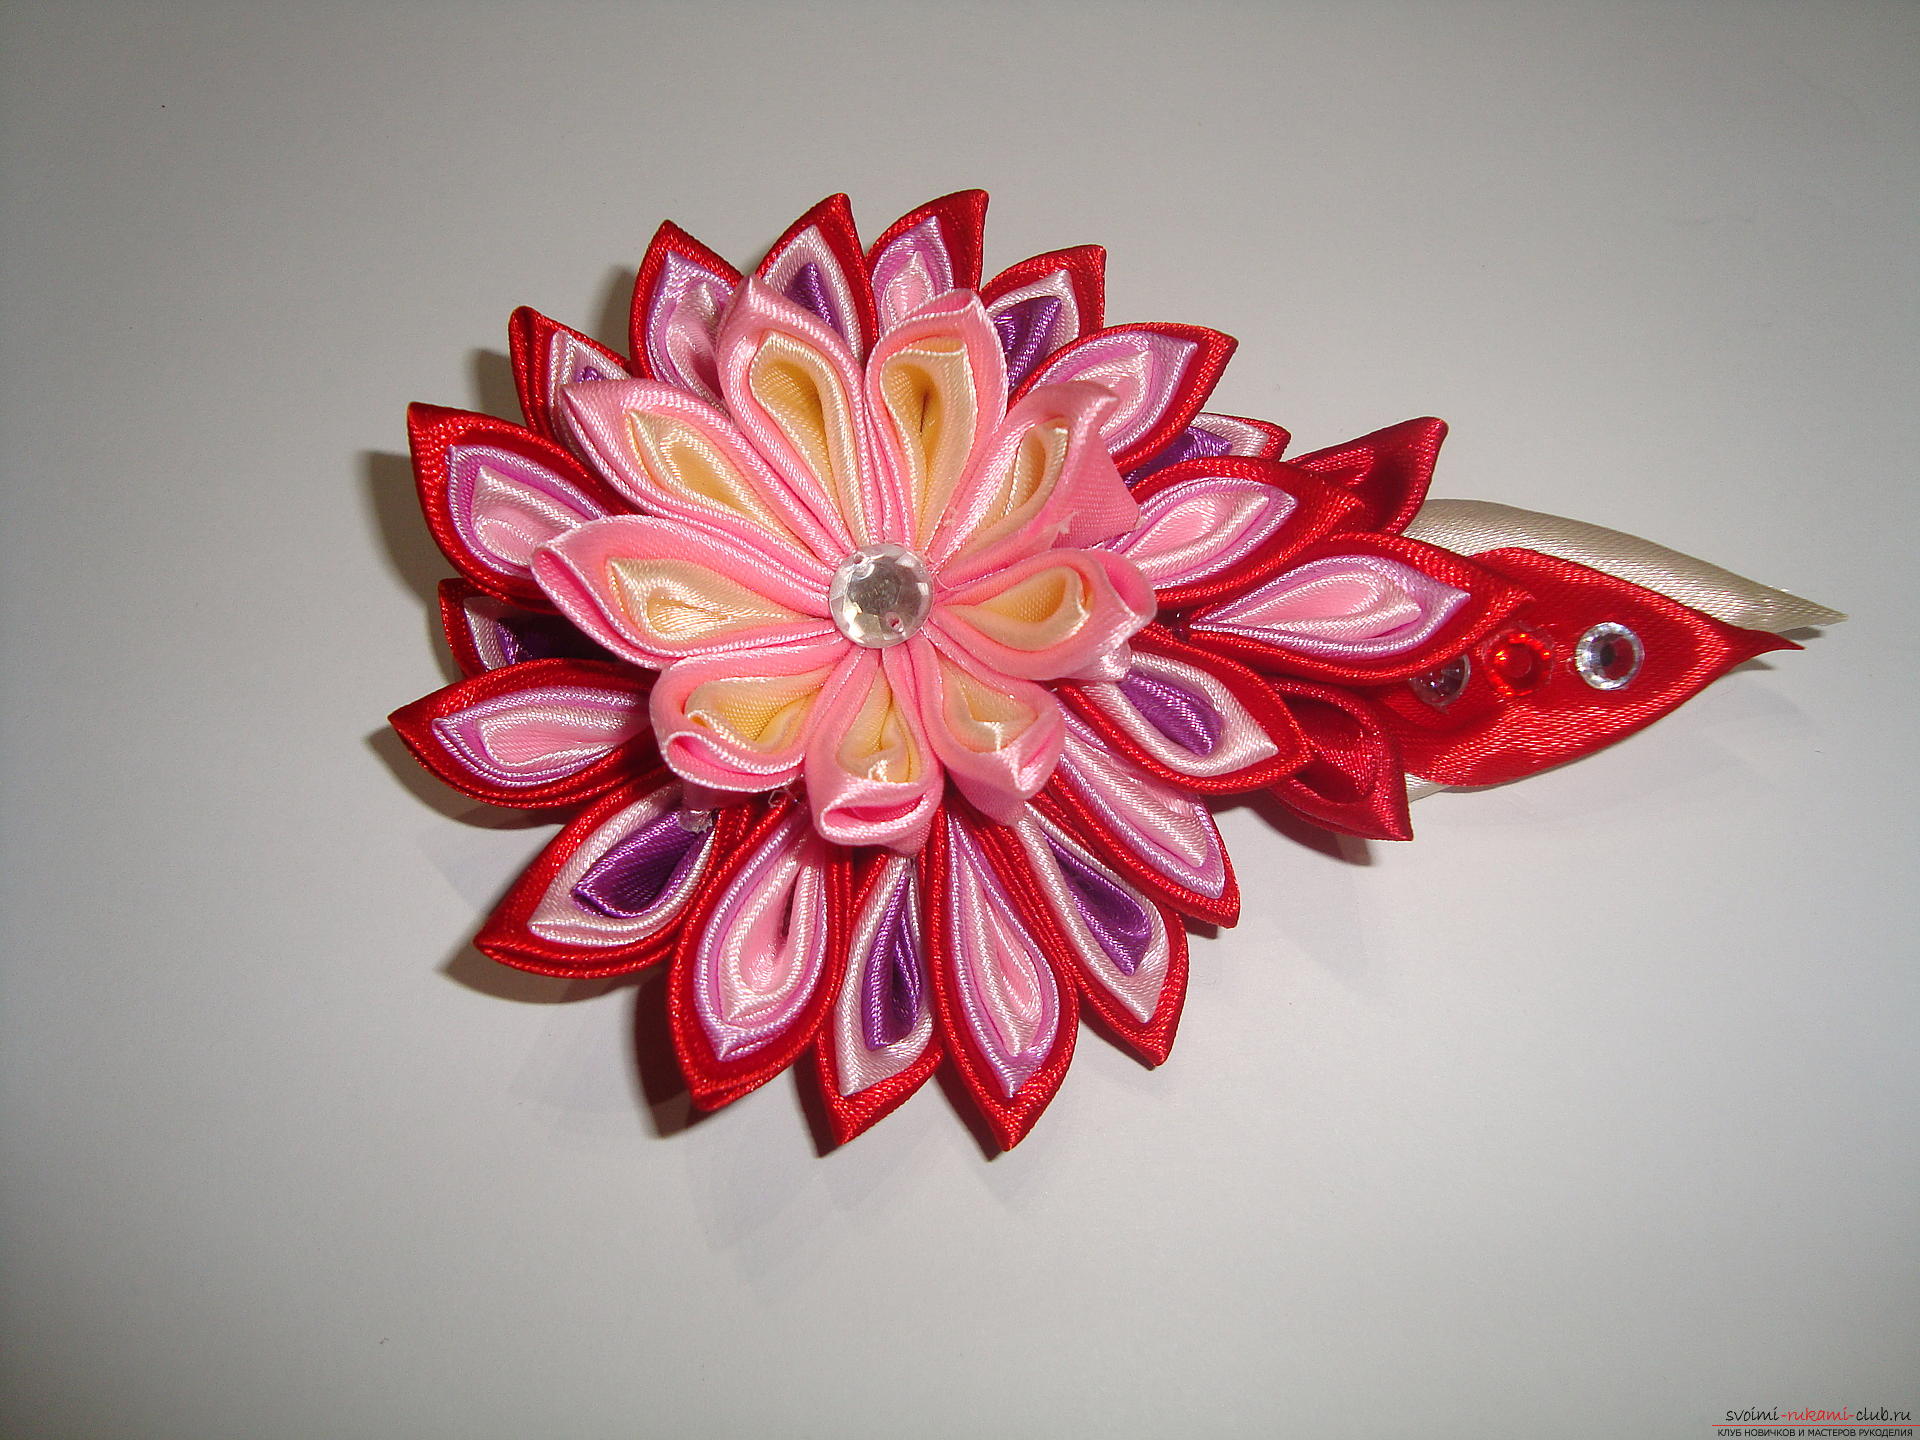 Подробное руководство с фото по изготовлению заколки в форме цветка с разноцветными лепестками в технике канзаши. Фото №18